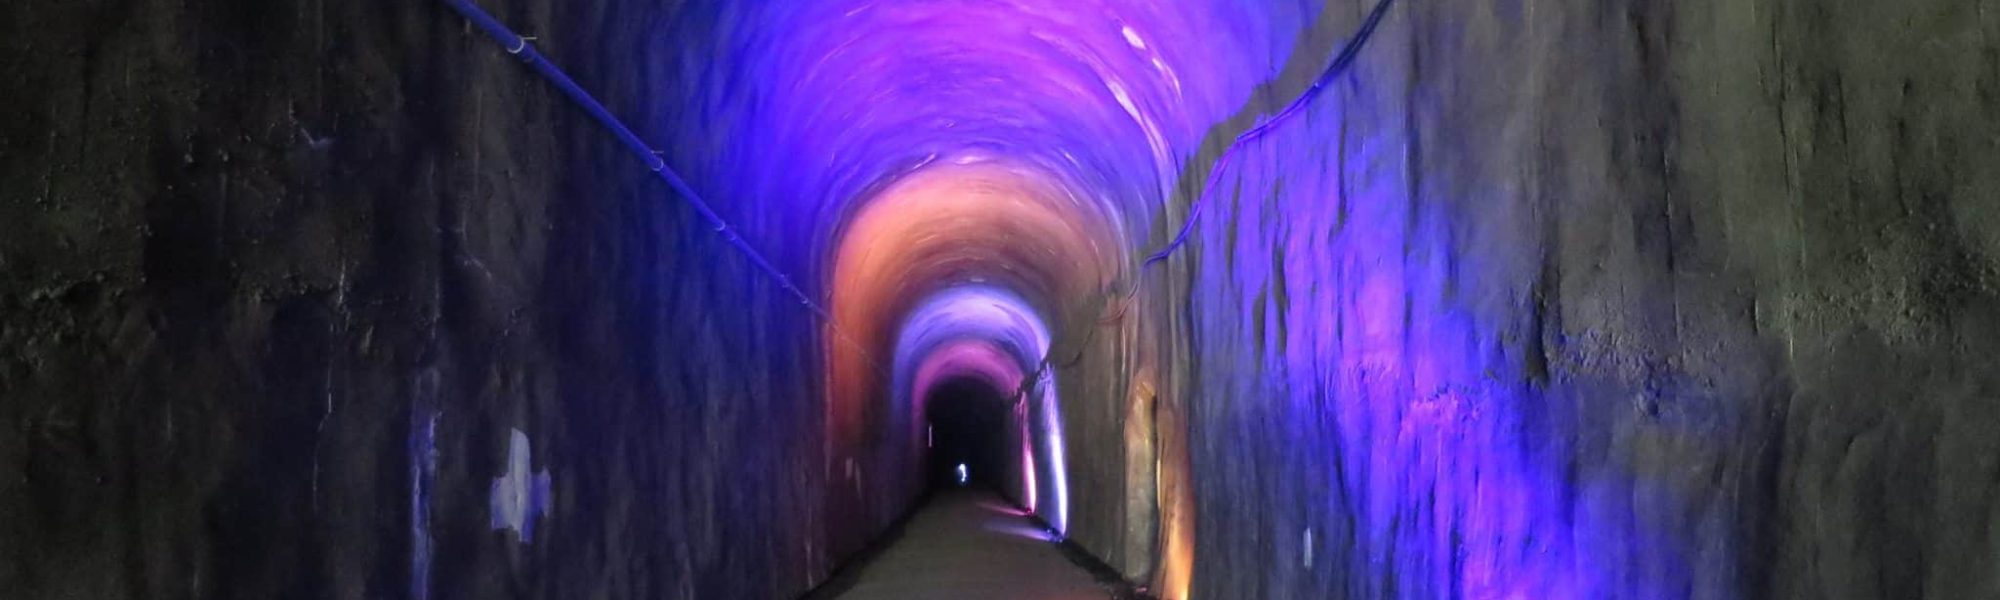 glow run tunnel